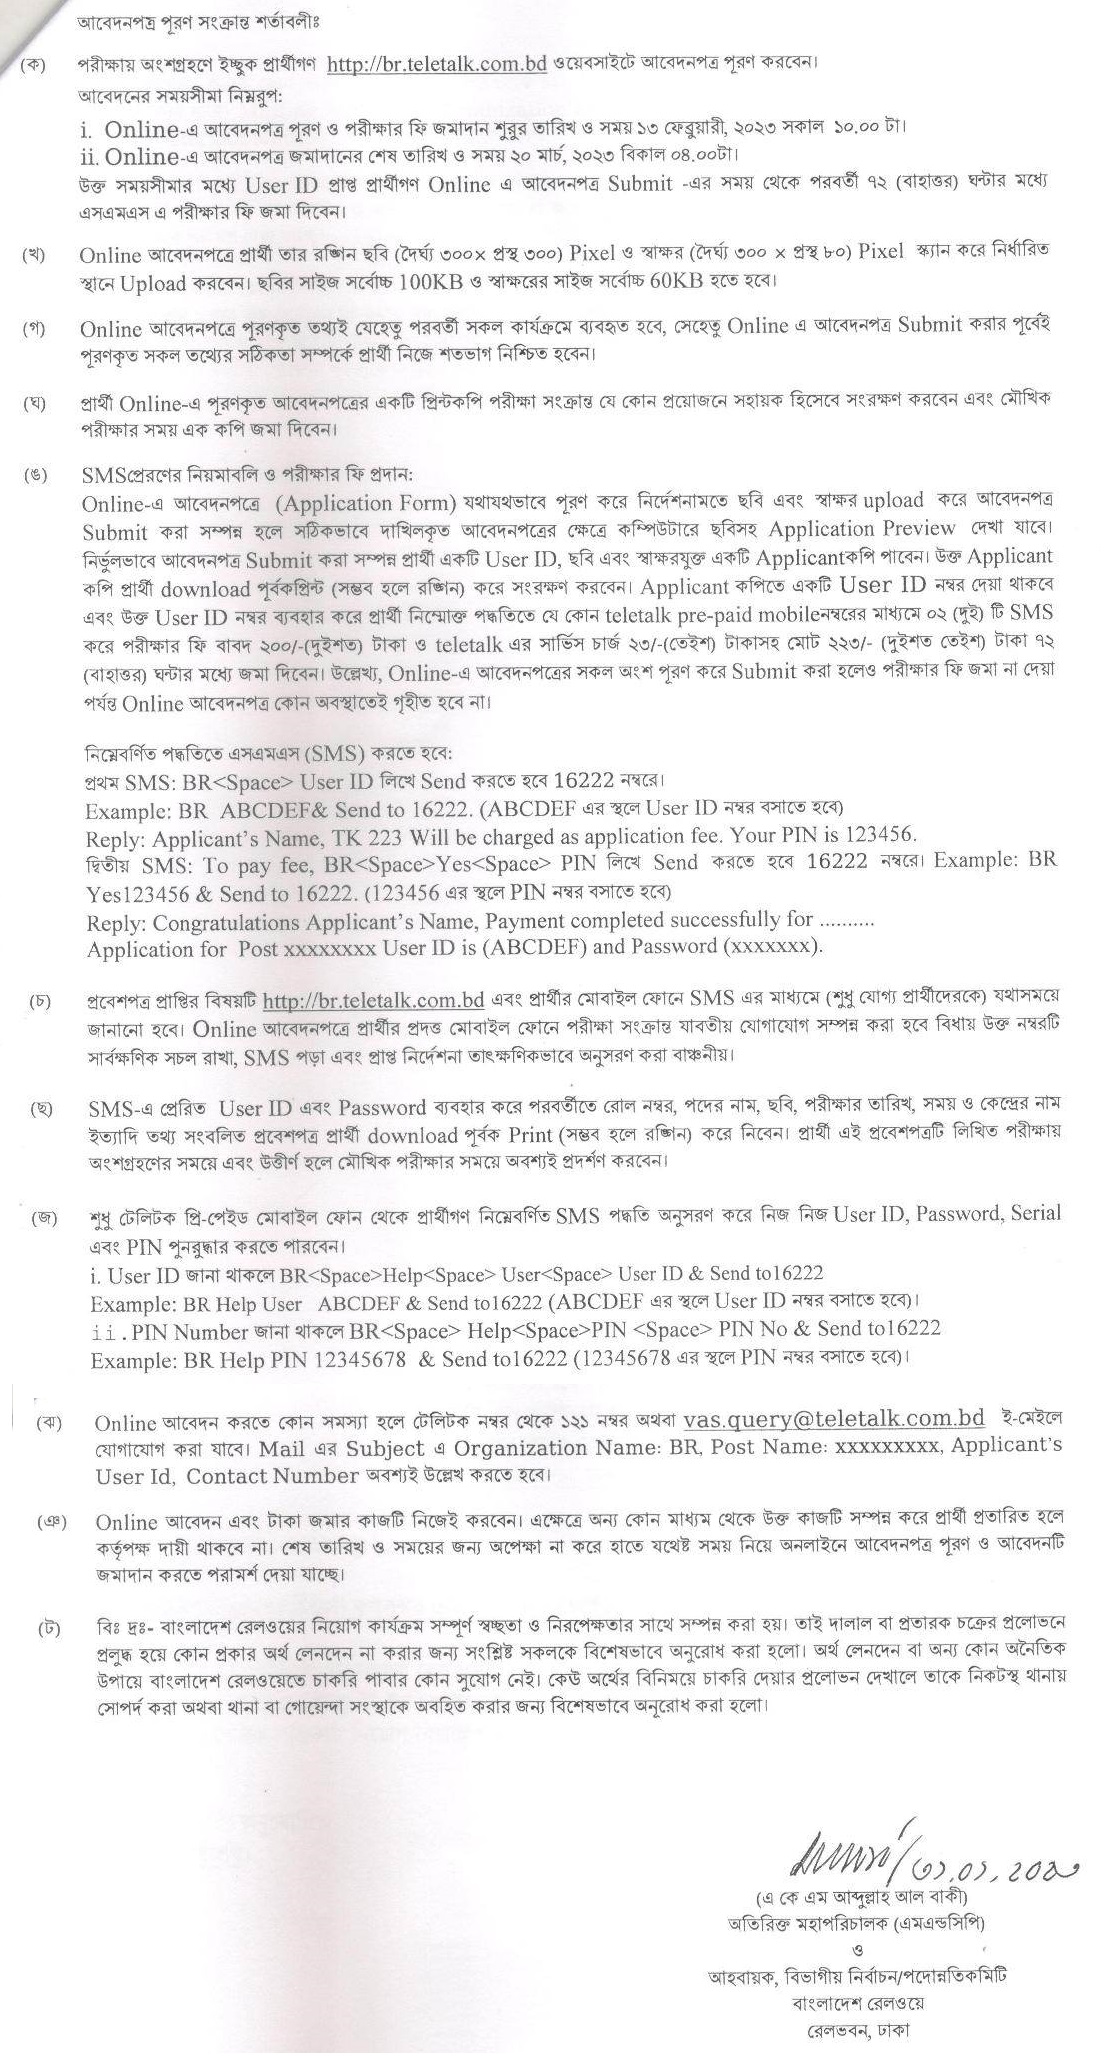 রেলওয়ে নিয়োগ 2023 - বাংলাদেশ রেলওয়ে নতুন নিয়োগ বিজ্ঞপ্তি ২০২৩ - Bangladesh Railway Job Circular 2023 - railway.gov.bd job circular 2023 - রেলওয়ে নিয়োগ বিজ্ঞপ্তি ২০২৩